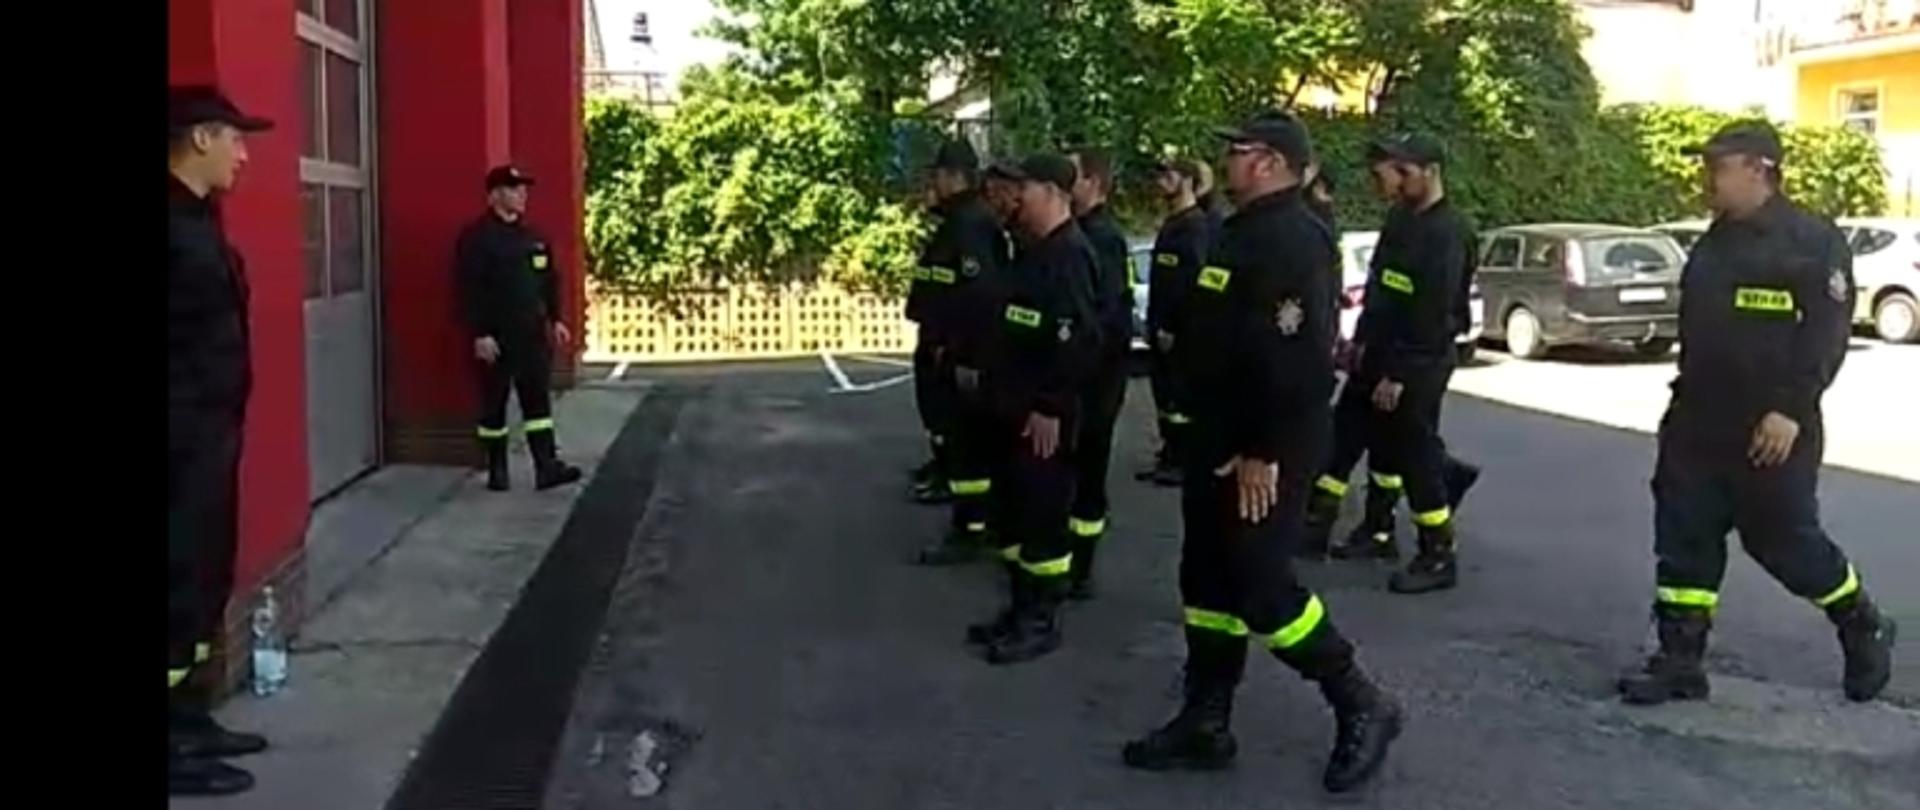 Kolorowe zdjęcie przedstawia grupę umundurowanych strażaków na placu przed budynkiem strażnicy. Strażacy podczas ćwiczeń w grupie.